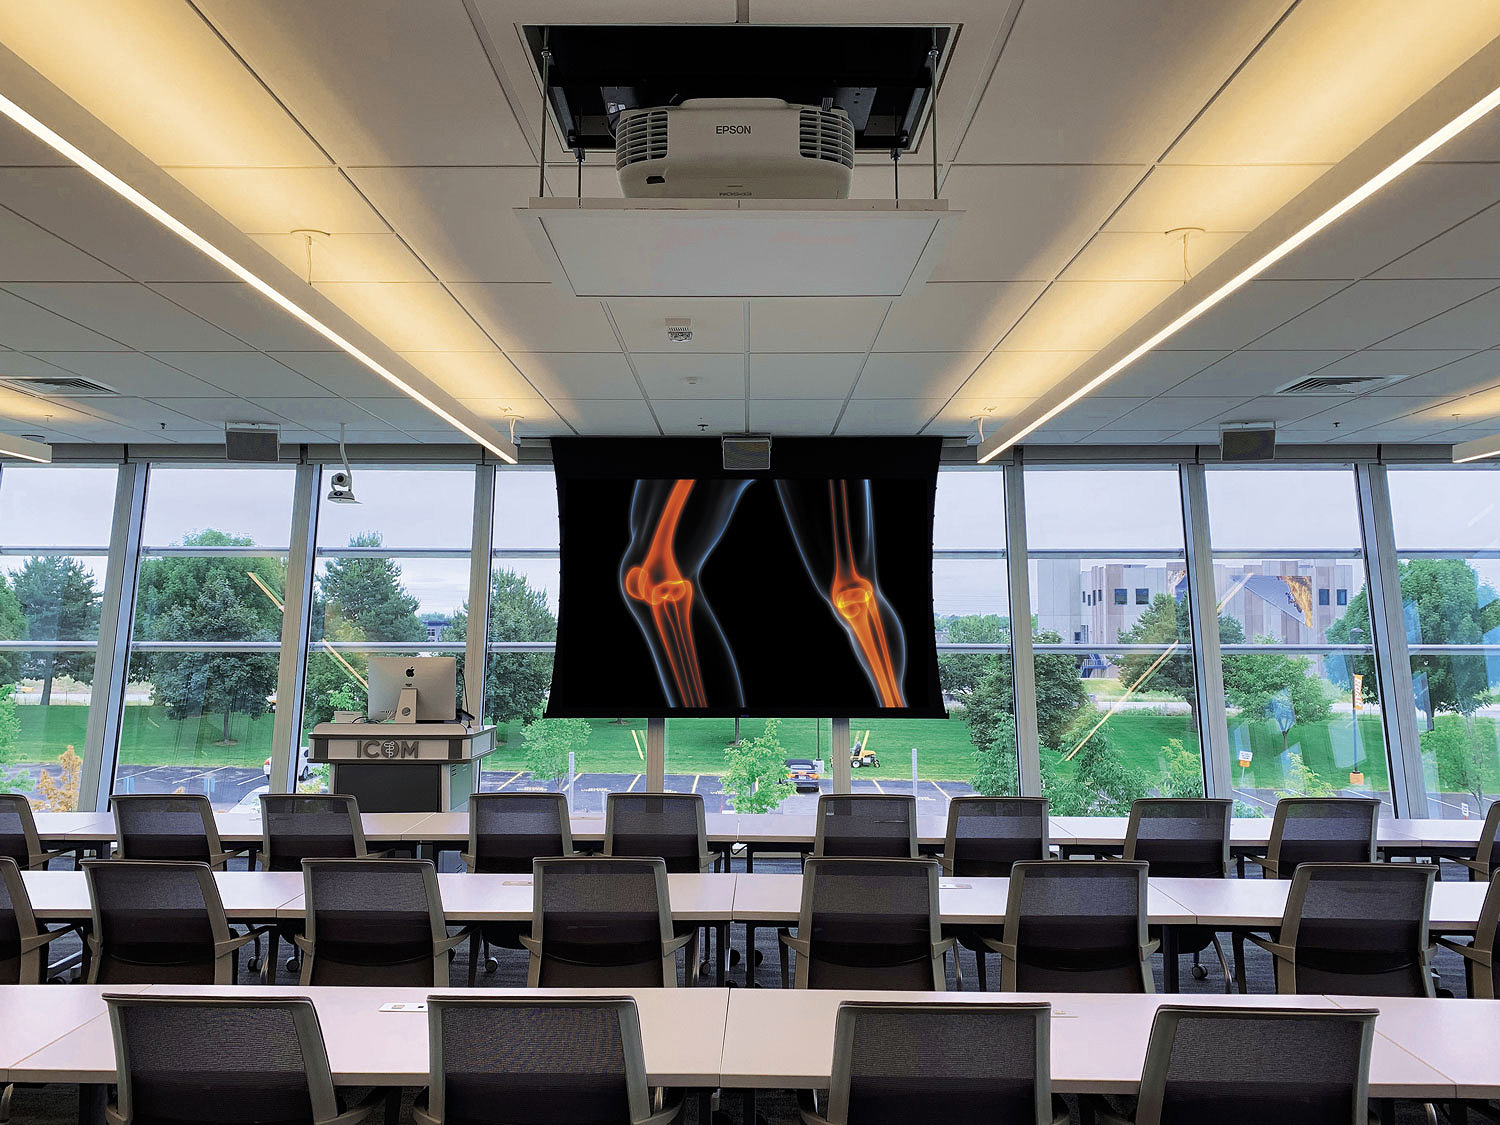 La Glassroom tiene tres muros de cristal, lo que requiere un diseño e instalación del sistema AV preciso para que se puedan visualizar imágenes de alta calidad y minimizar las reflexiones de audio.